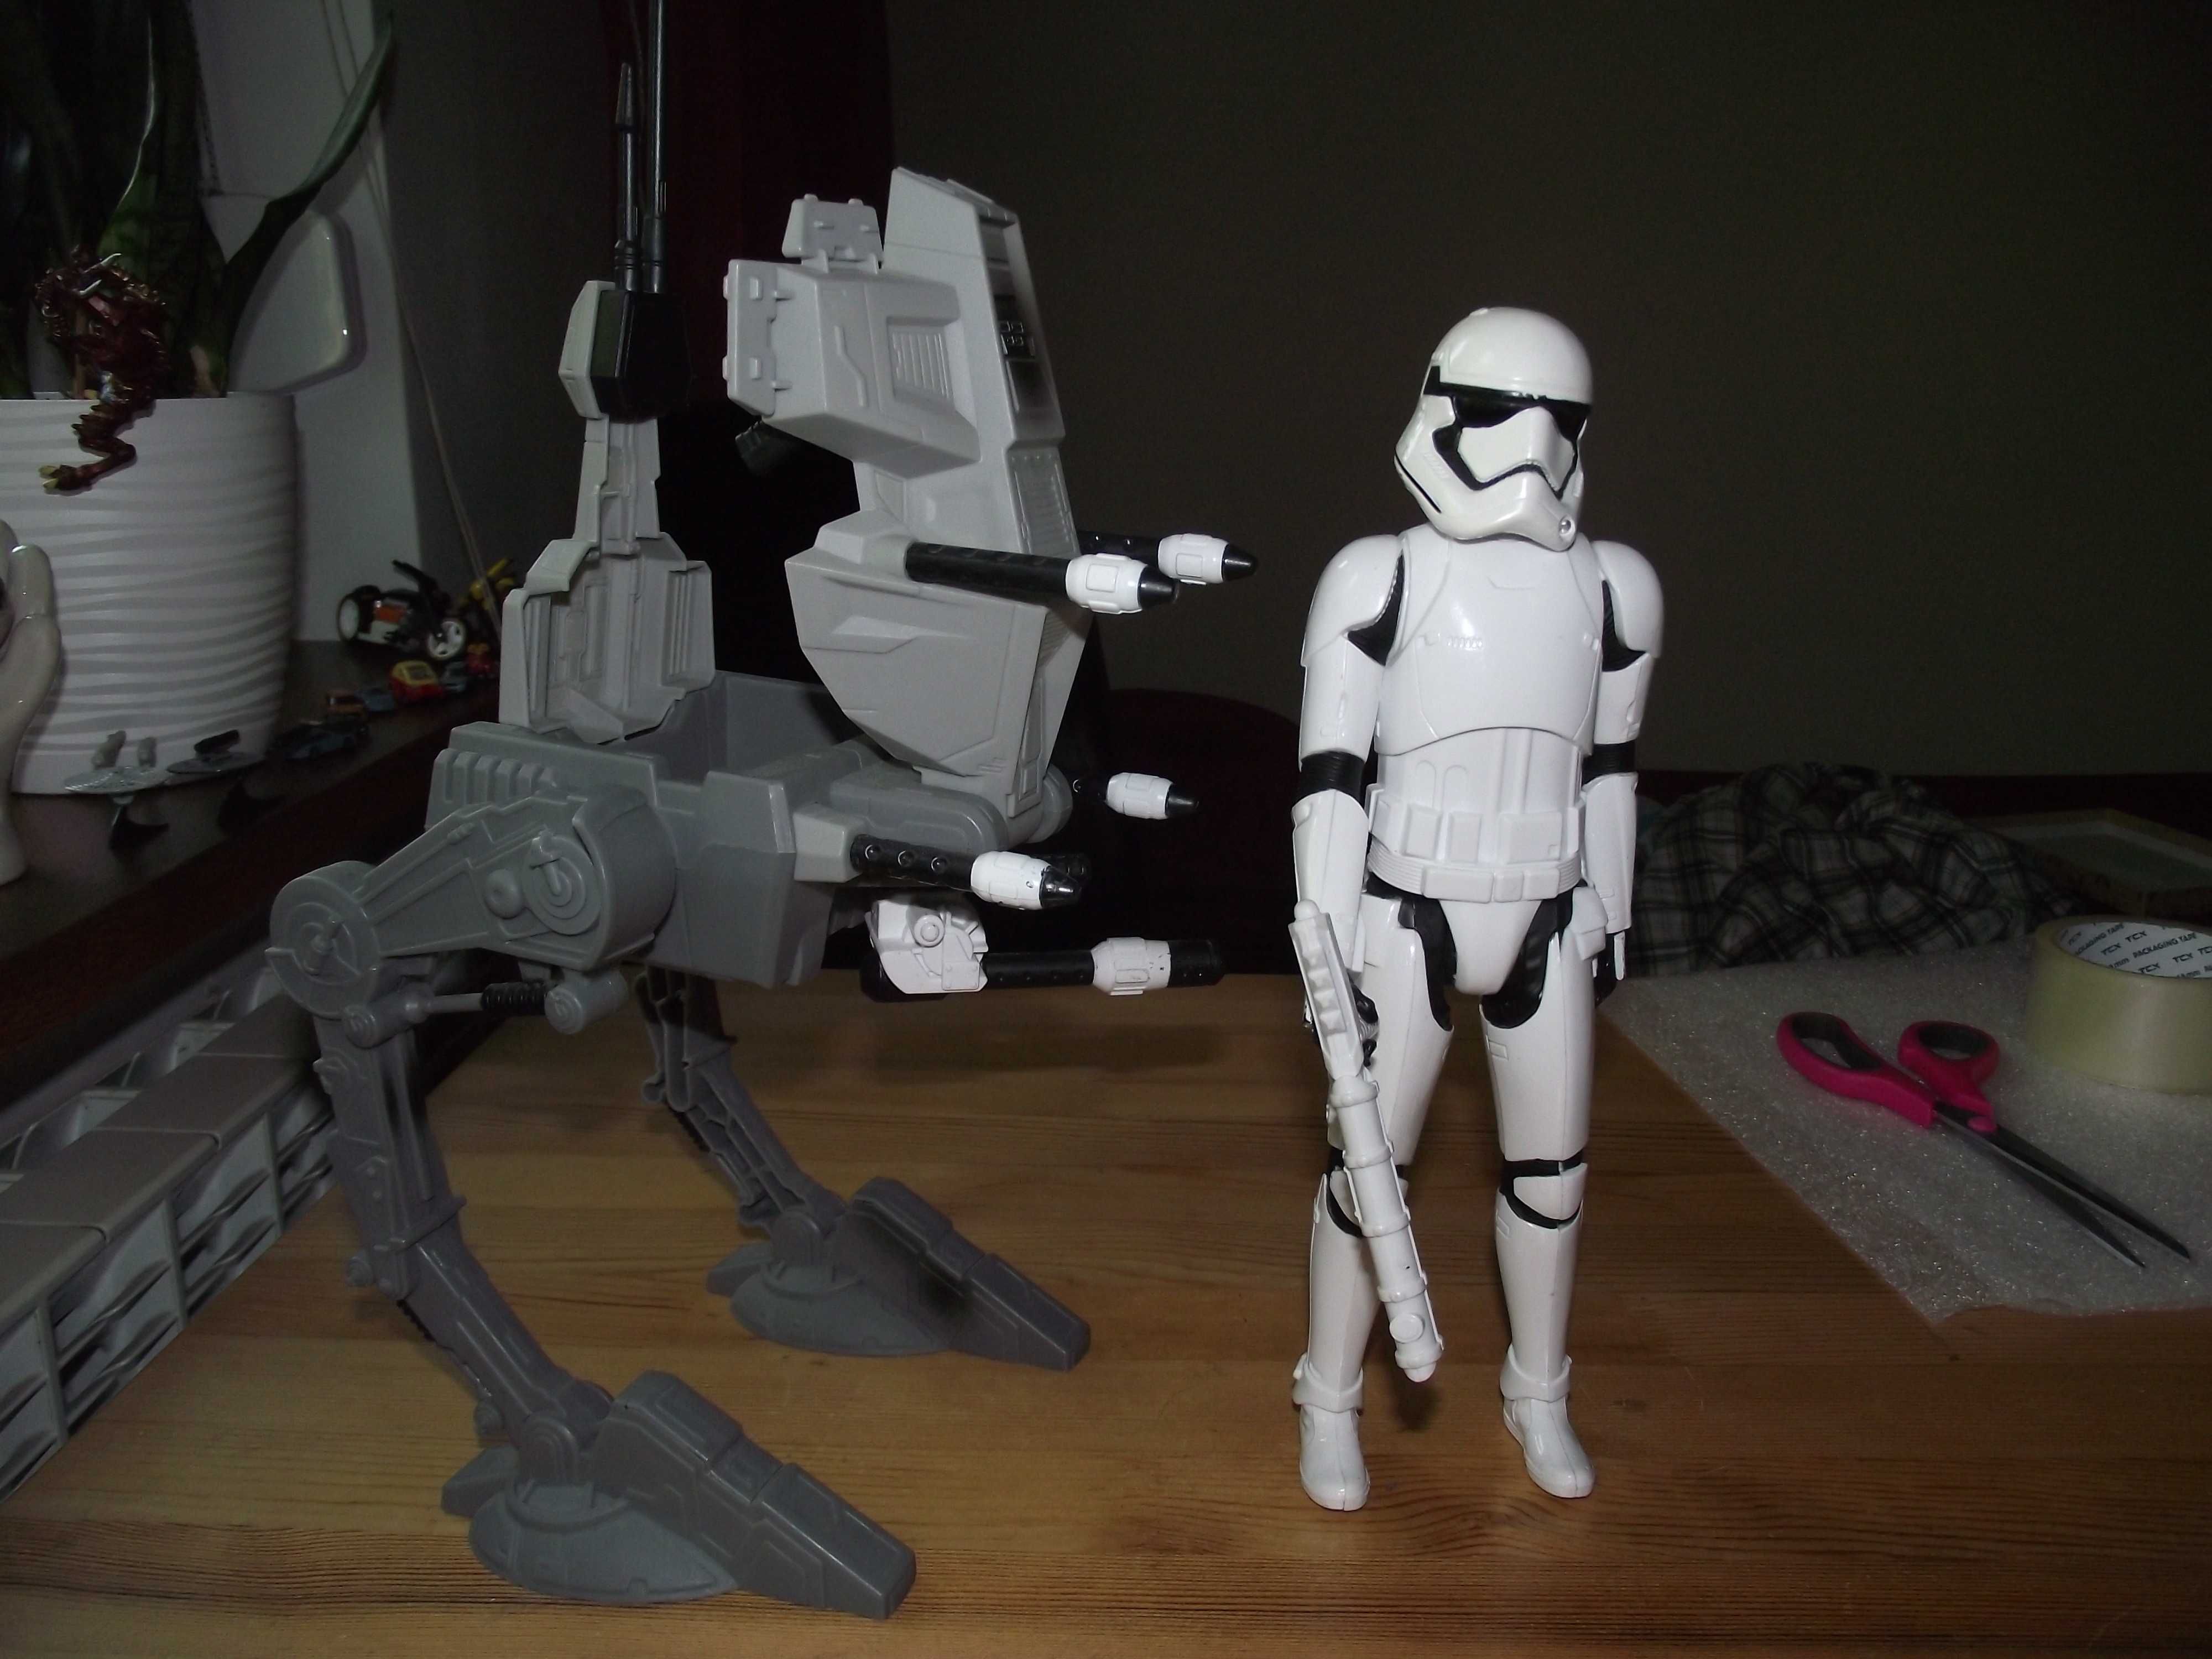 szturmowiec i maszyna krocząca zabawka Star wars